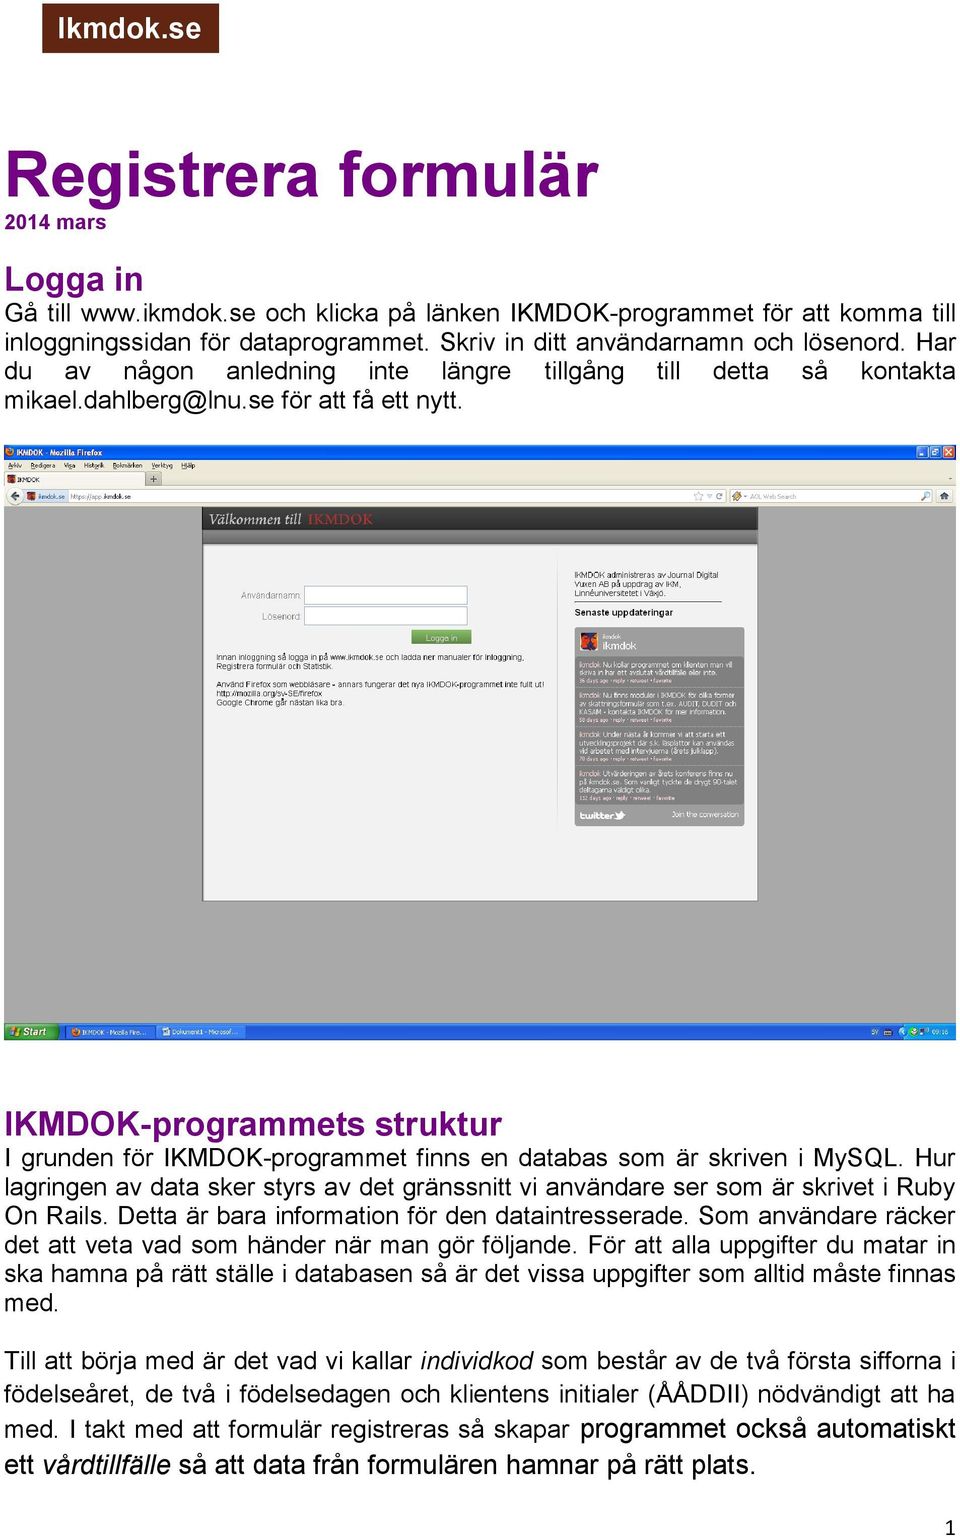 IKMDOK-programmets struktur I grunden för IKMDOK-programmet finns en databas som är skriven i MySQL. Hur lagringen av data sker styrs av det gränssnitt vi användare ser som är skrivet i Ruby On Rails.